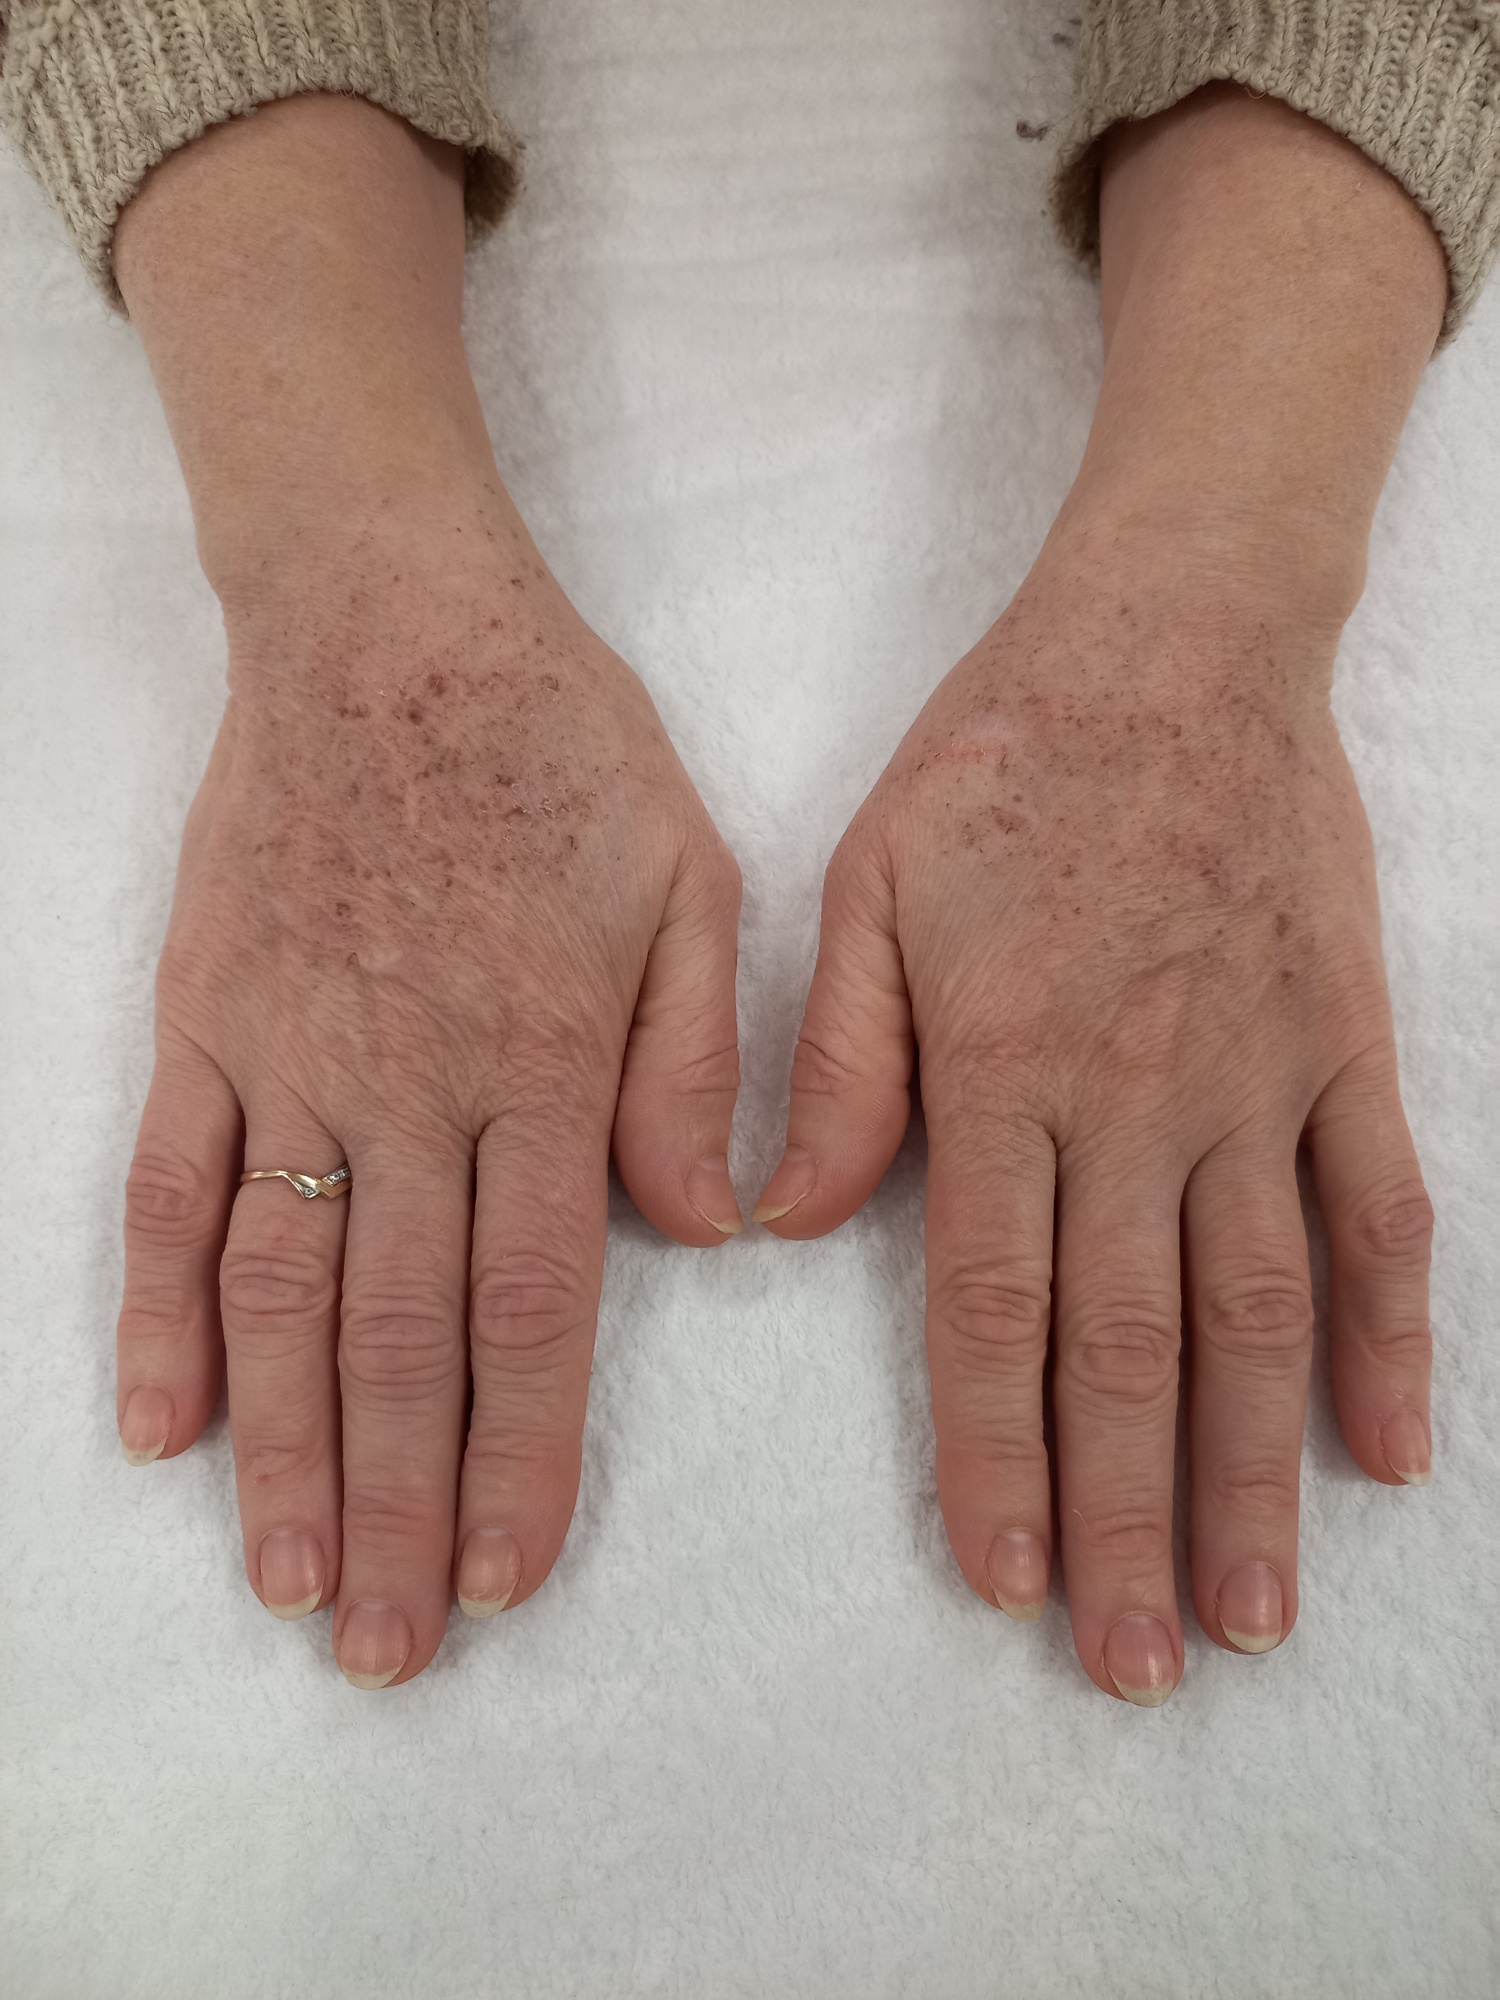 Омоложение кожи кистей рук и лечение гиперпигментации с помощью применения методики IPL фото до.jpg